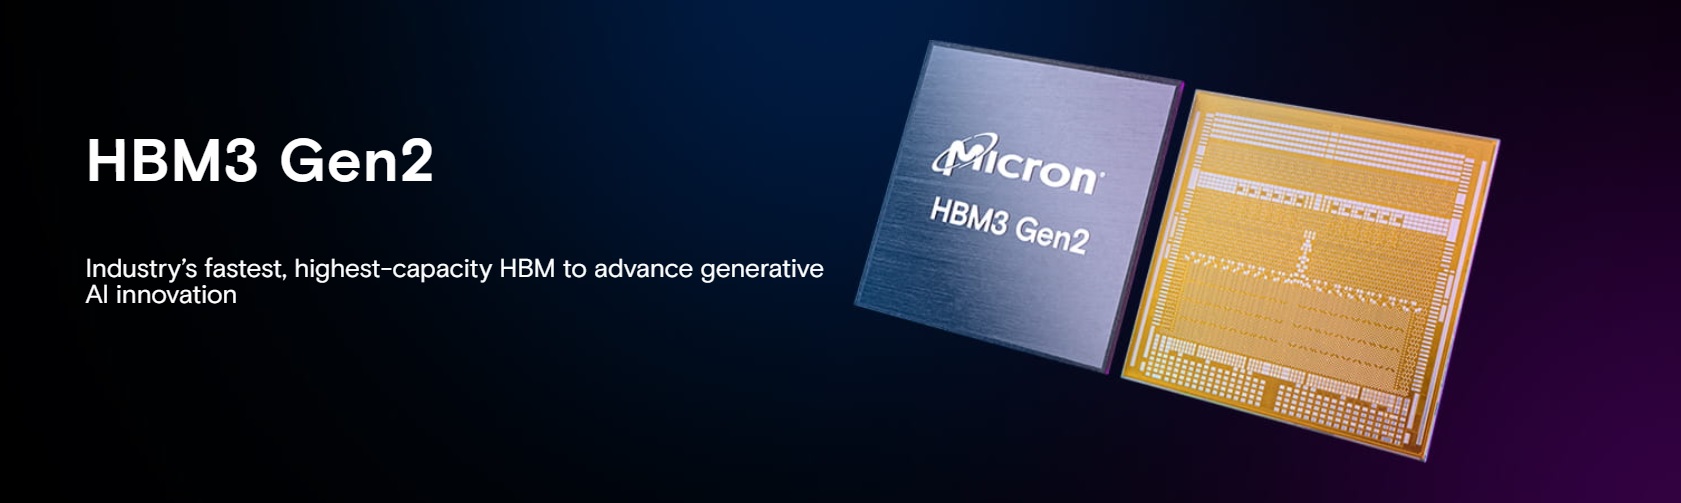 Micron-HMB3-GEn-2.jpg